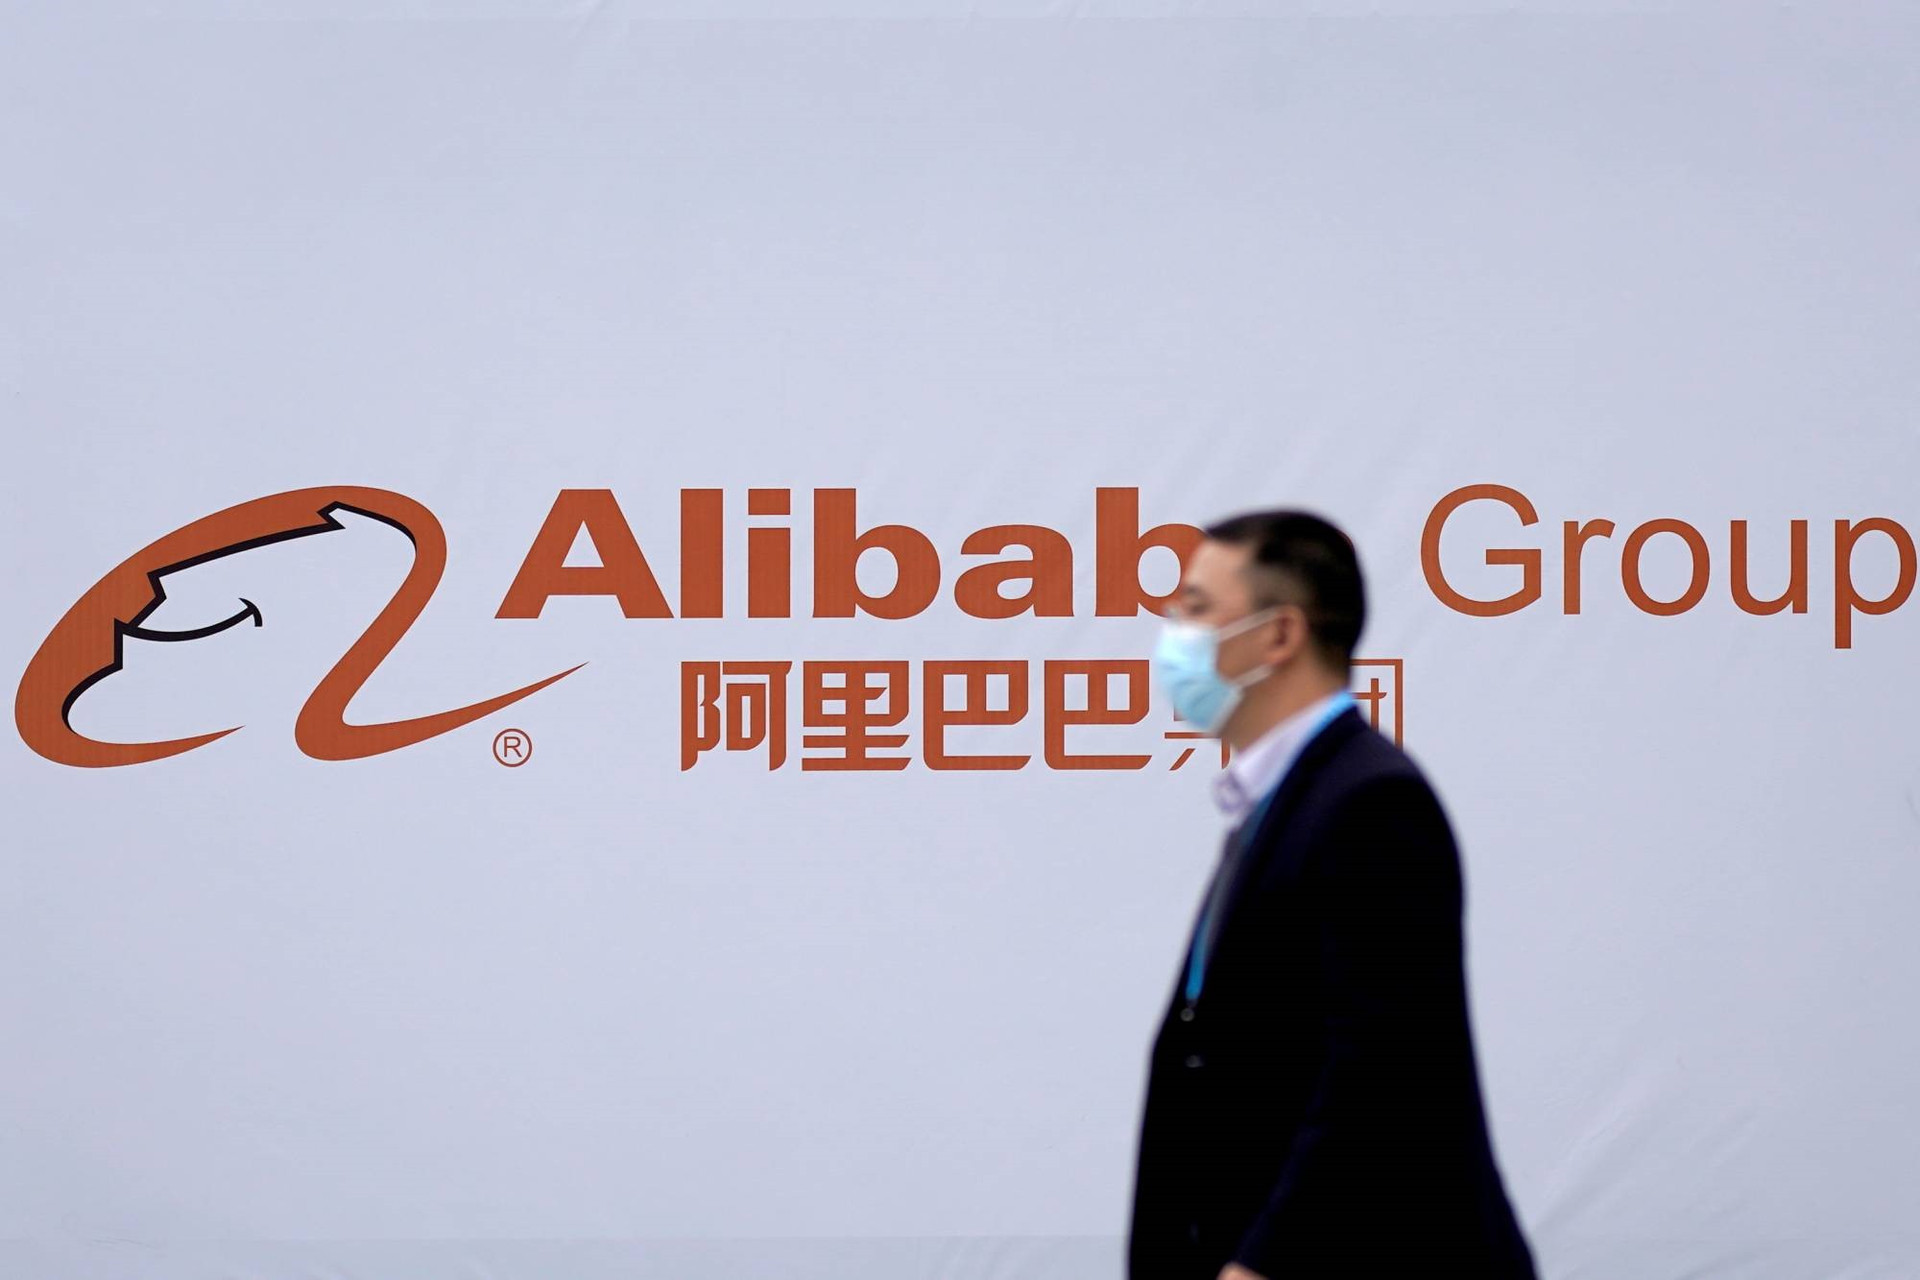 Bắc Kinh đang gửi thông điệp đến các công ty công nghệ khác khi mạnh tay với Alibaba. Ảnh: Reuters.